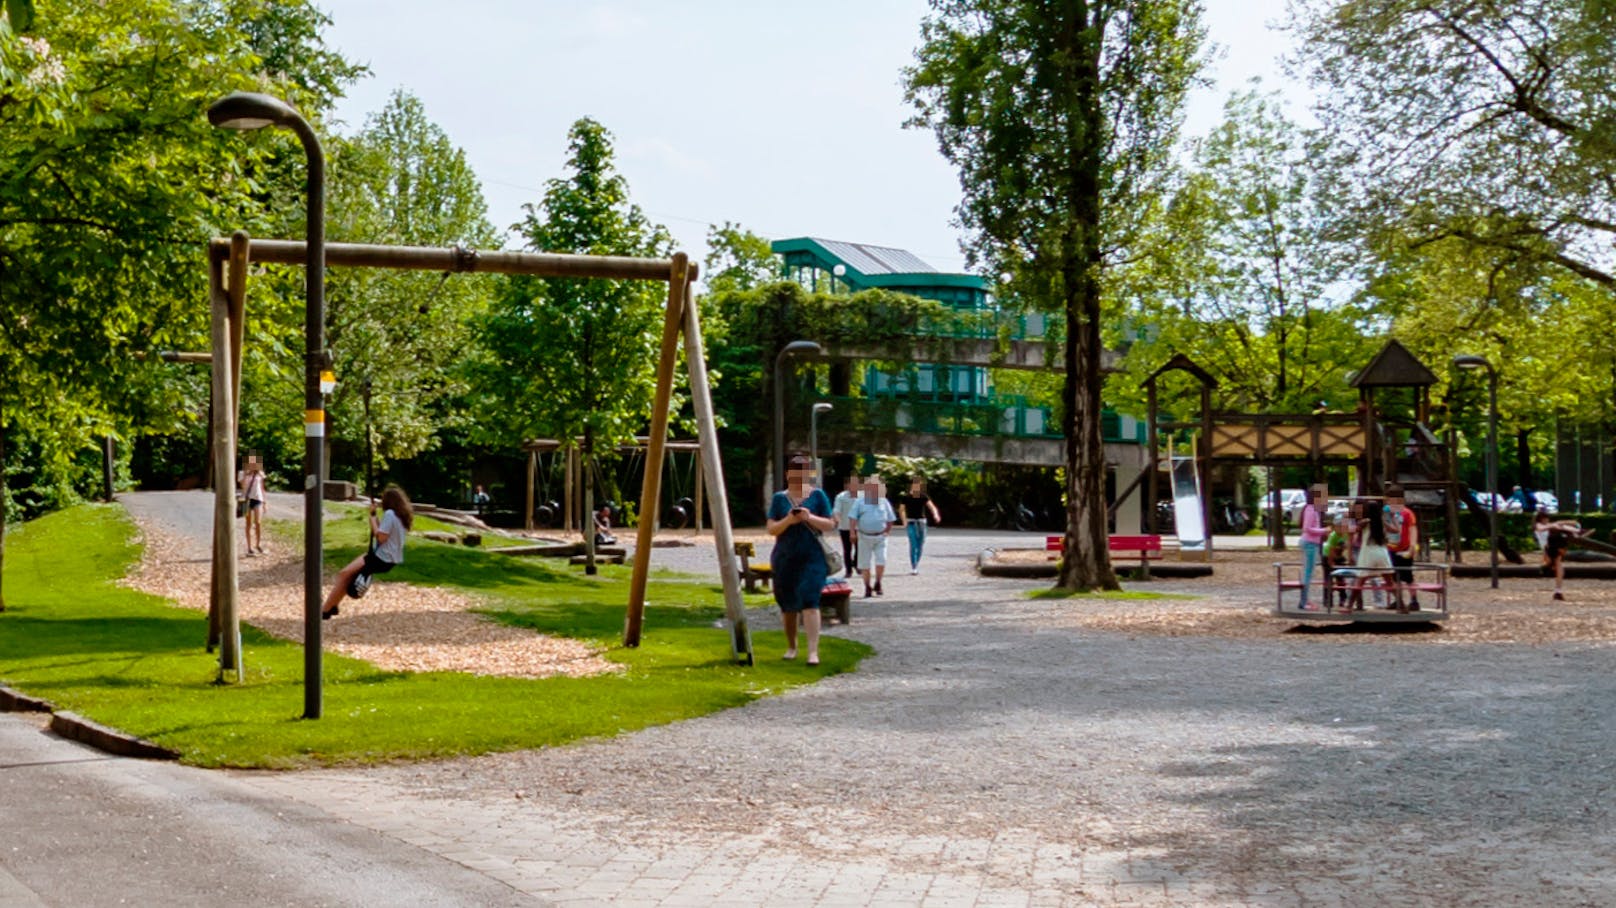 Der Kinderspielplatz an der Seepromenade in Bregenz: Genau hier, zwischen Seilrutsche und Kinderkarrussel soll es zu dem Vorfall gekommen sein